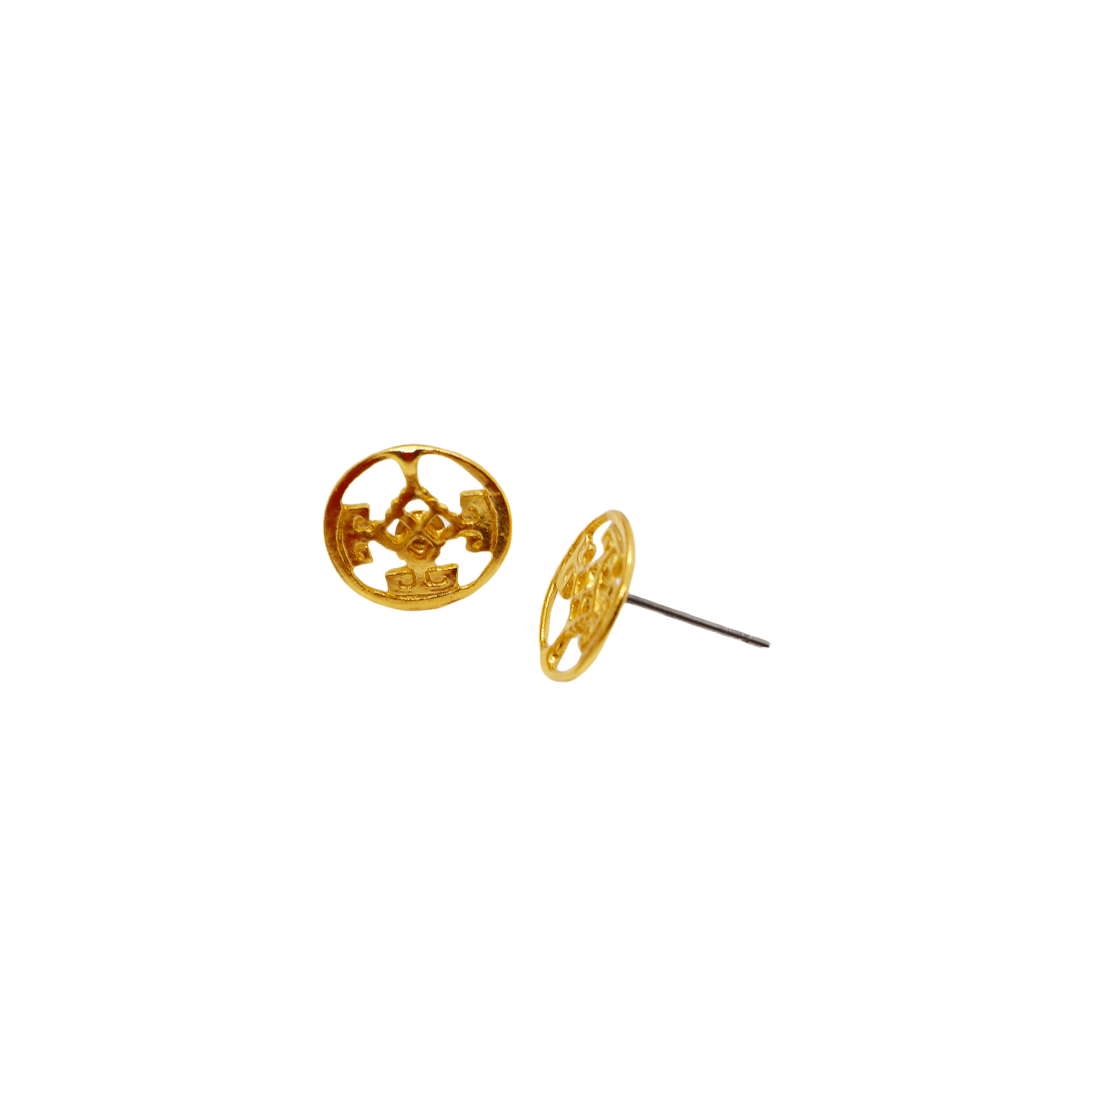 Tierralta Earrings - Origin Colombia